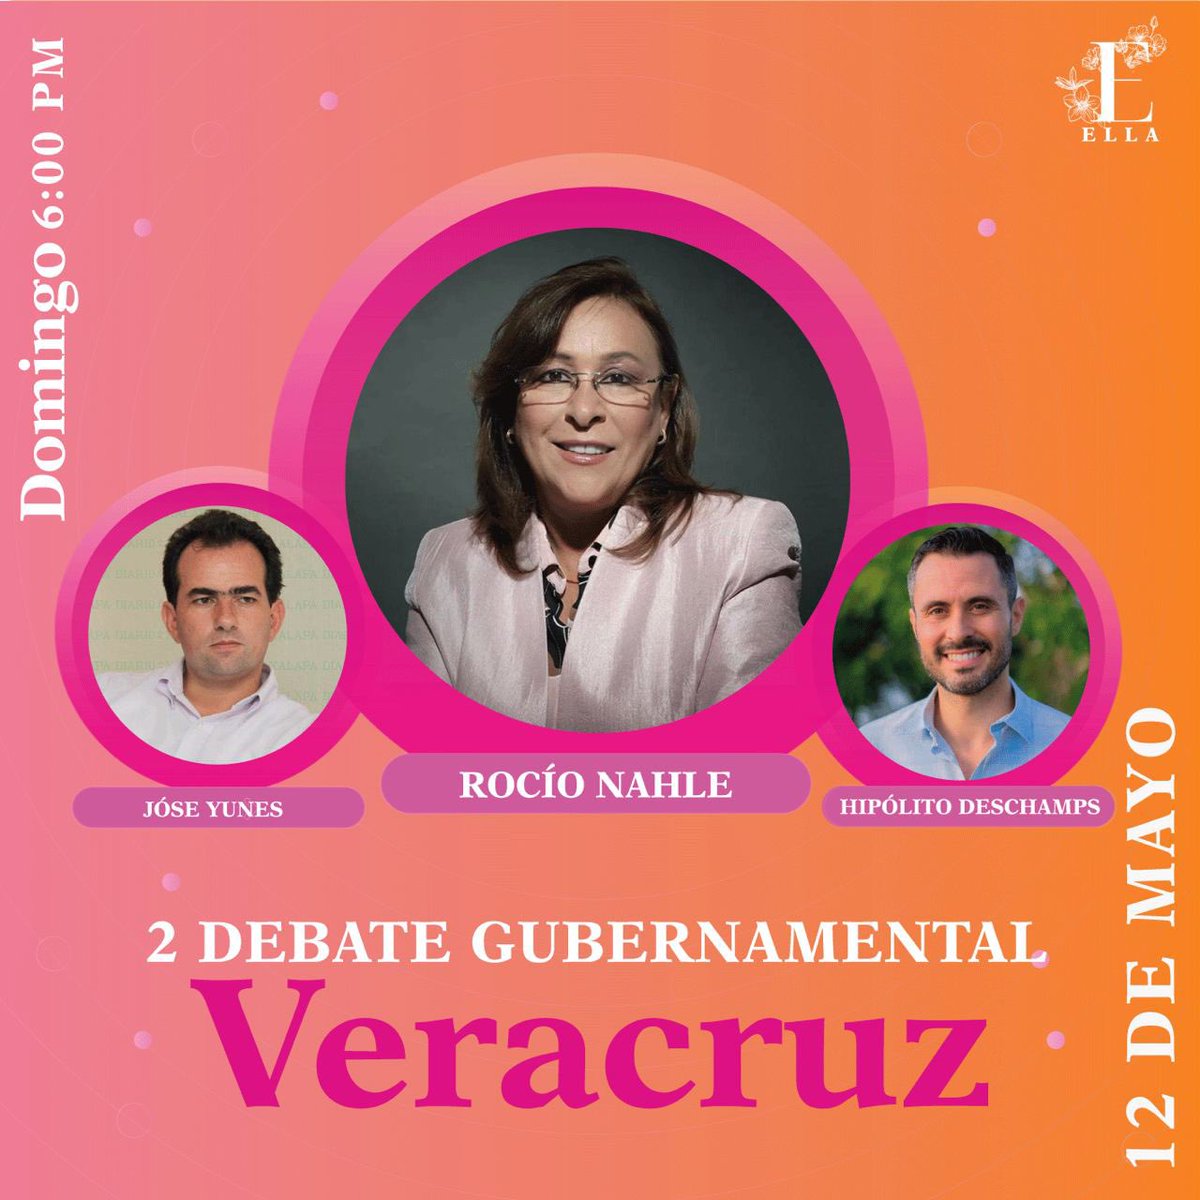 ¡El poder de la palabra!
Observa el intercambio de ideas en el segundo debate gubernamental por el estado de Veracruz. 
.
.
.
.
.
#Debate #Candidatos #PropuestasPolíticas #ella